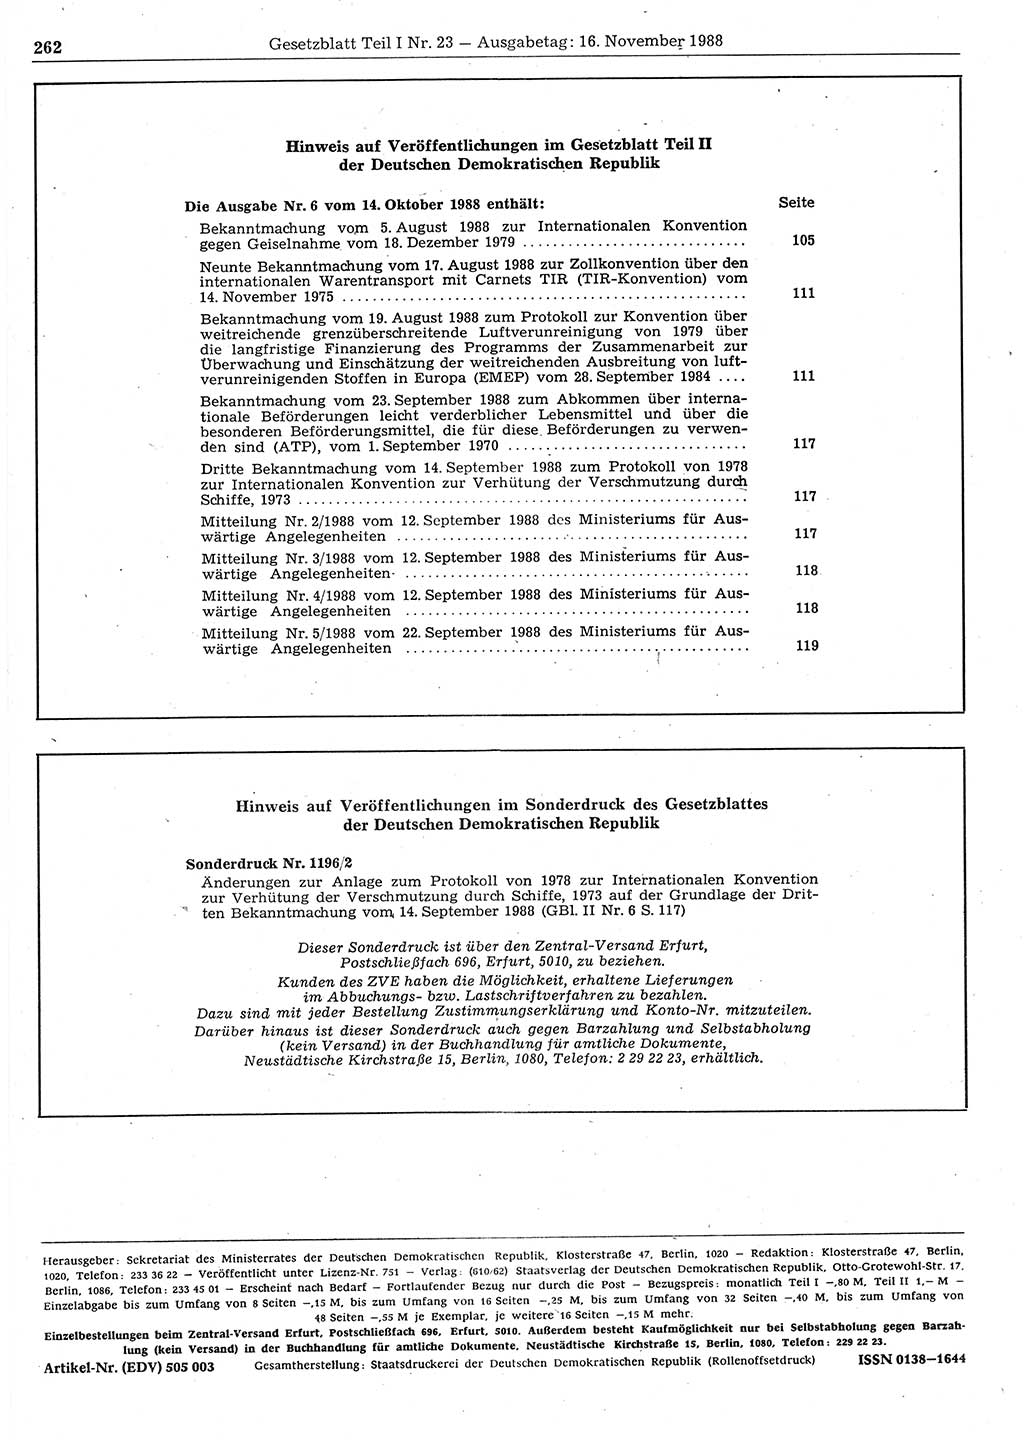 Gesetzblatt (GBl.) der Deutschen Demokratischen Republik (DDR) Teil Ⅰ 1988, Seite 262 (GBl. DDR Ⅰ 1988, S. 262)